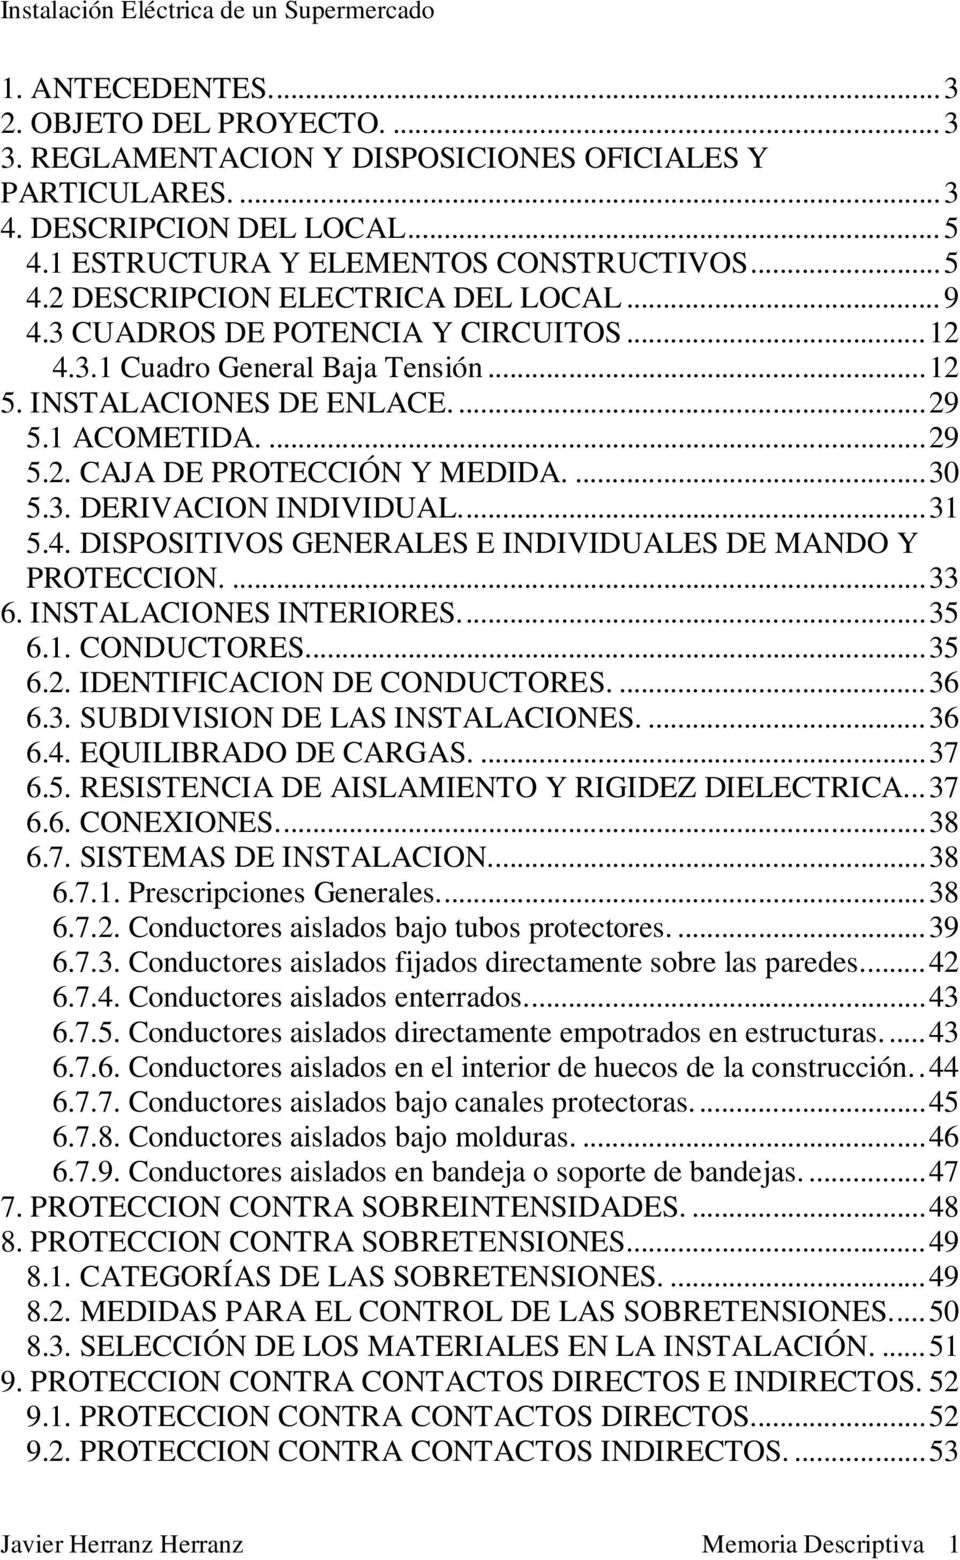 ..31 5.4. DISPOSITIVOS GENERALES E INDIVIDUALES DE MANDO Y PROTECCION....33 6. INSTALACIONES INTERIORES...35 6.1. CONDUCTORES...35 6.2. IDENTIFICACION DE CONDUCTORES....36 6.3. SUBDIVISION DE LAS INSTALACIONES.